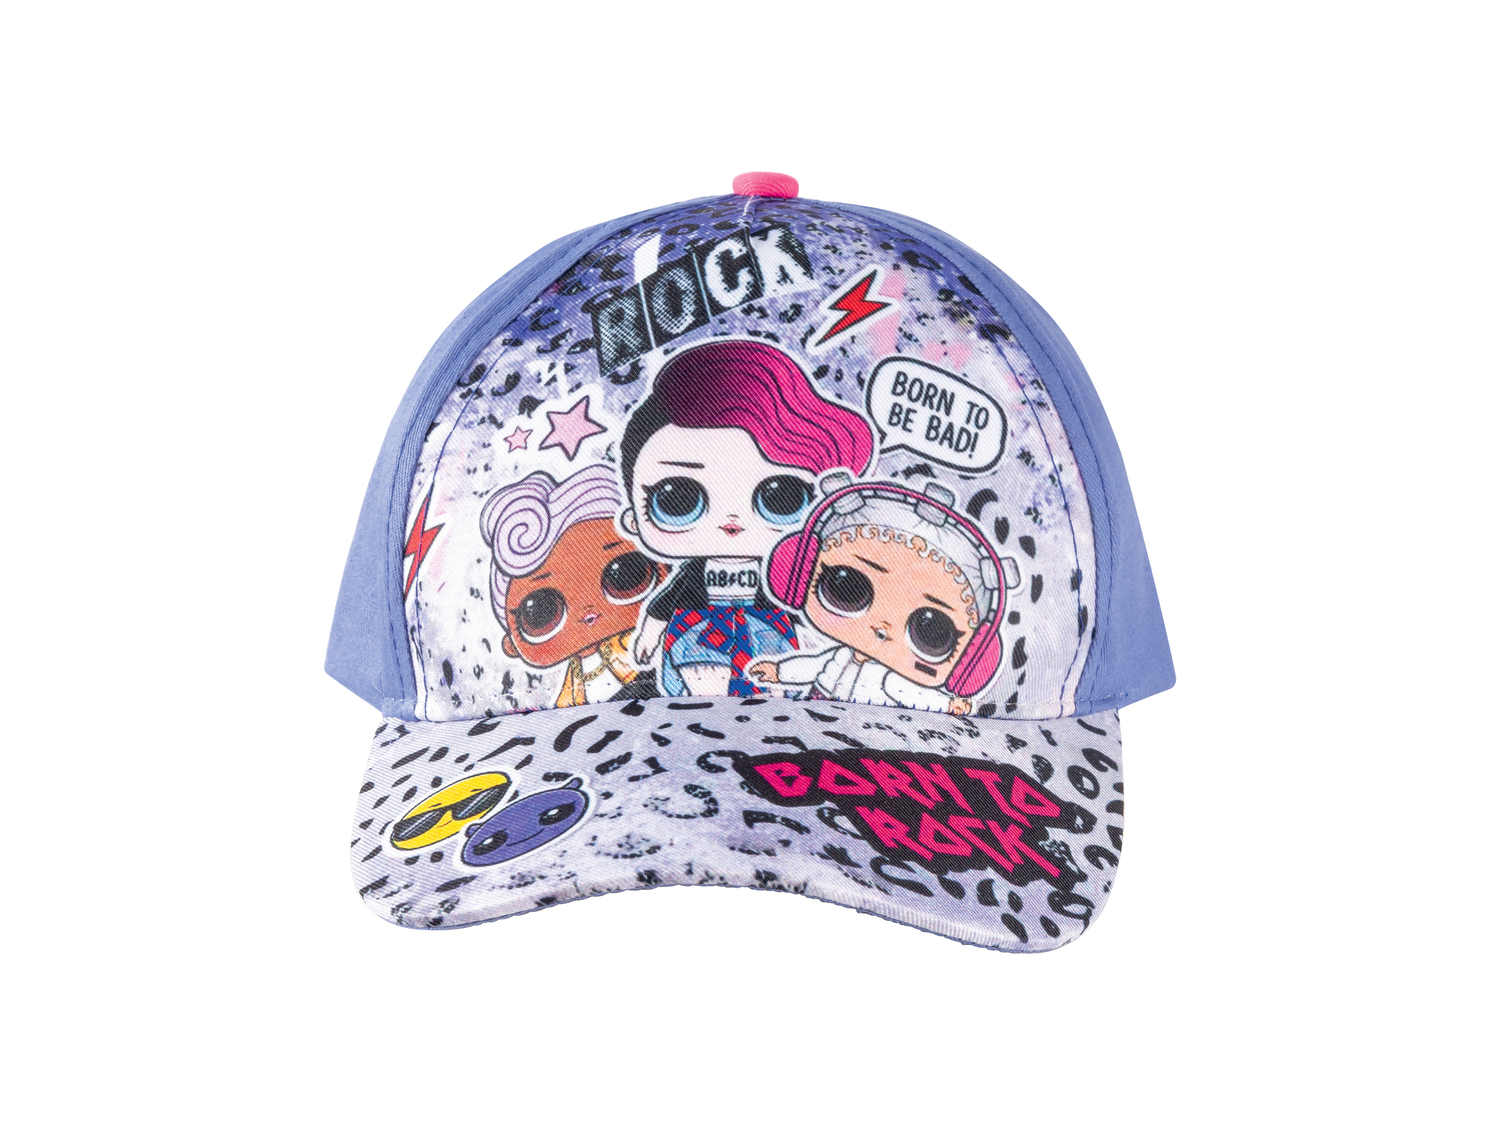 Cappellino Emoji, Paw Patrol, LOL , prezzo 2.99 €  
Misure: S-M